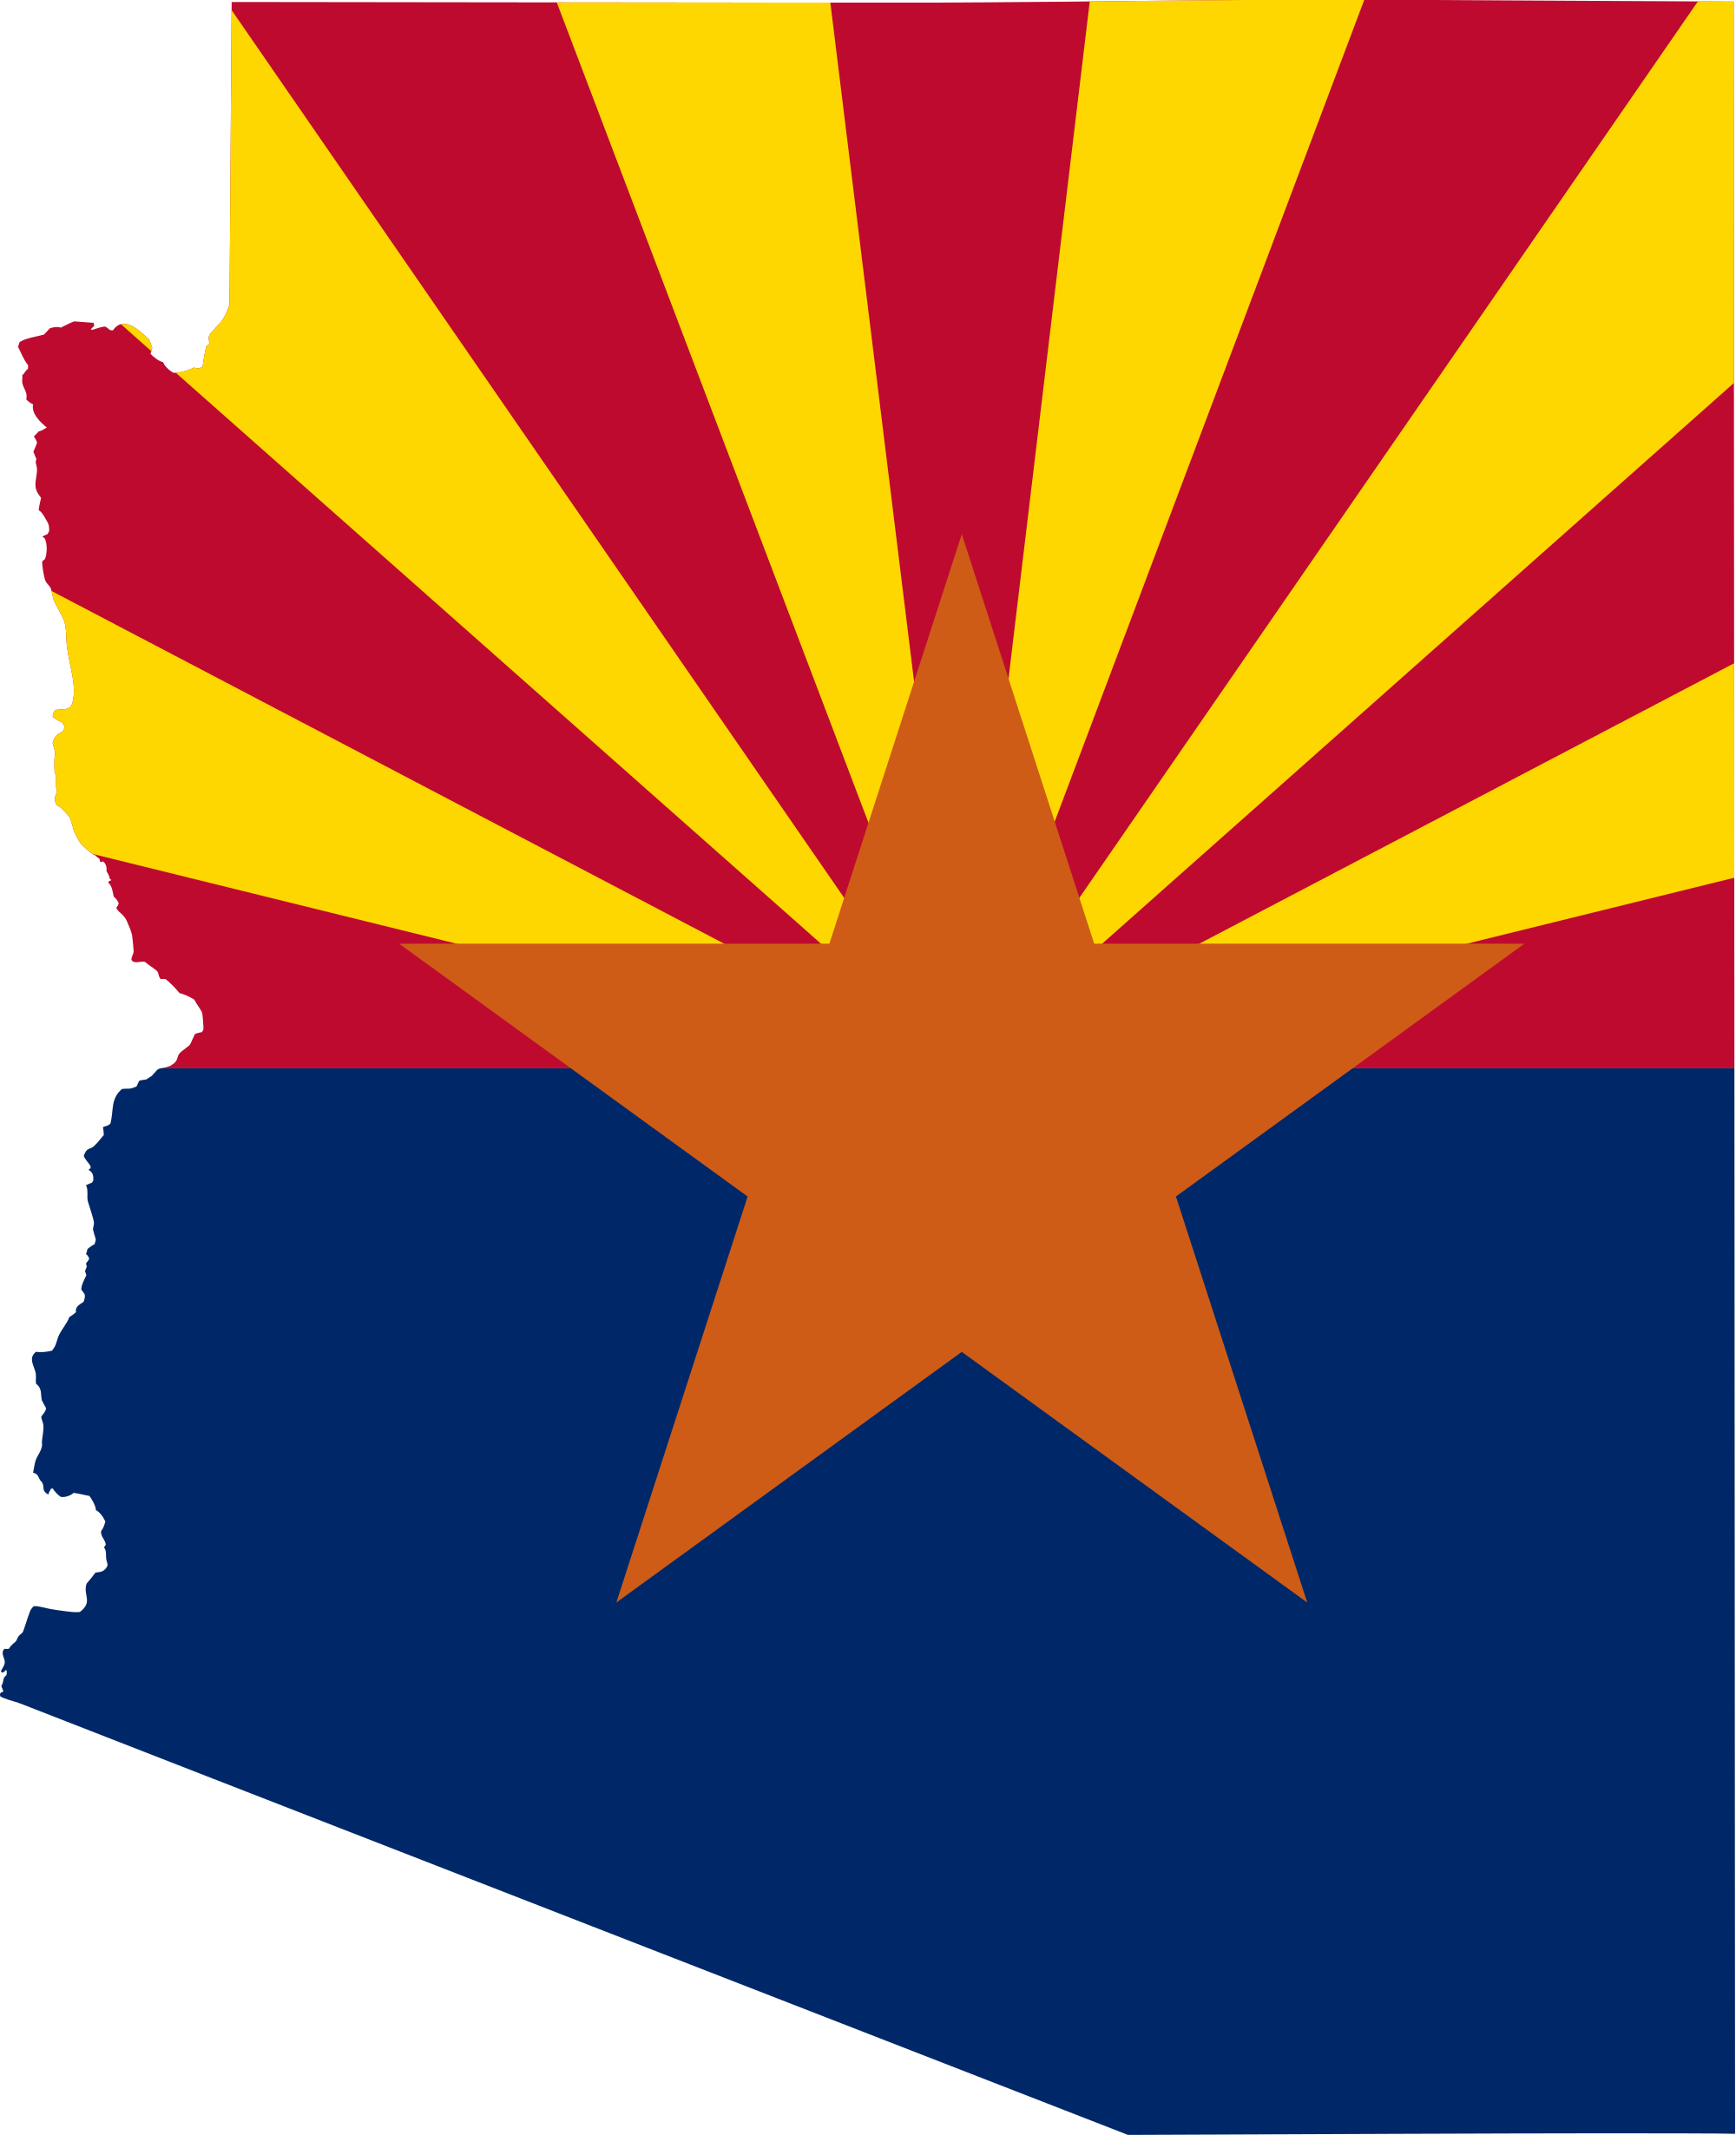 Phoenix Arizona Flag PNG HD Quality